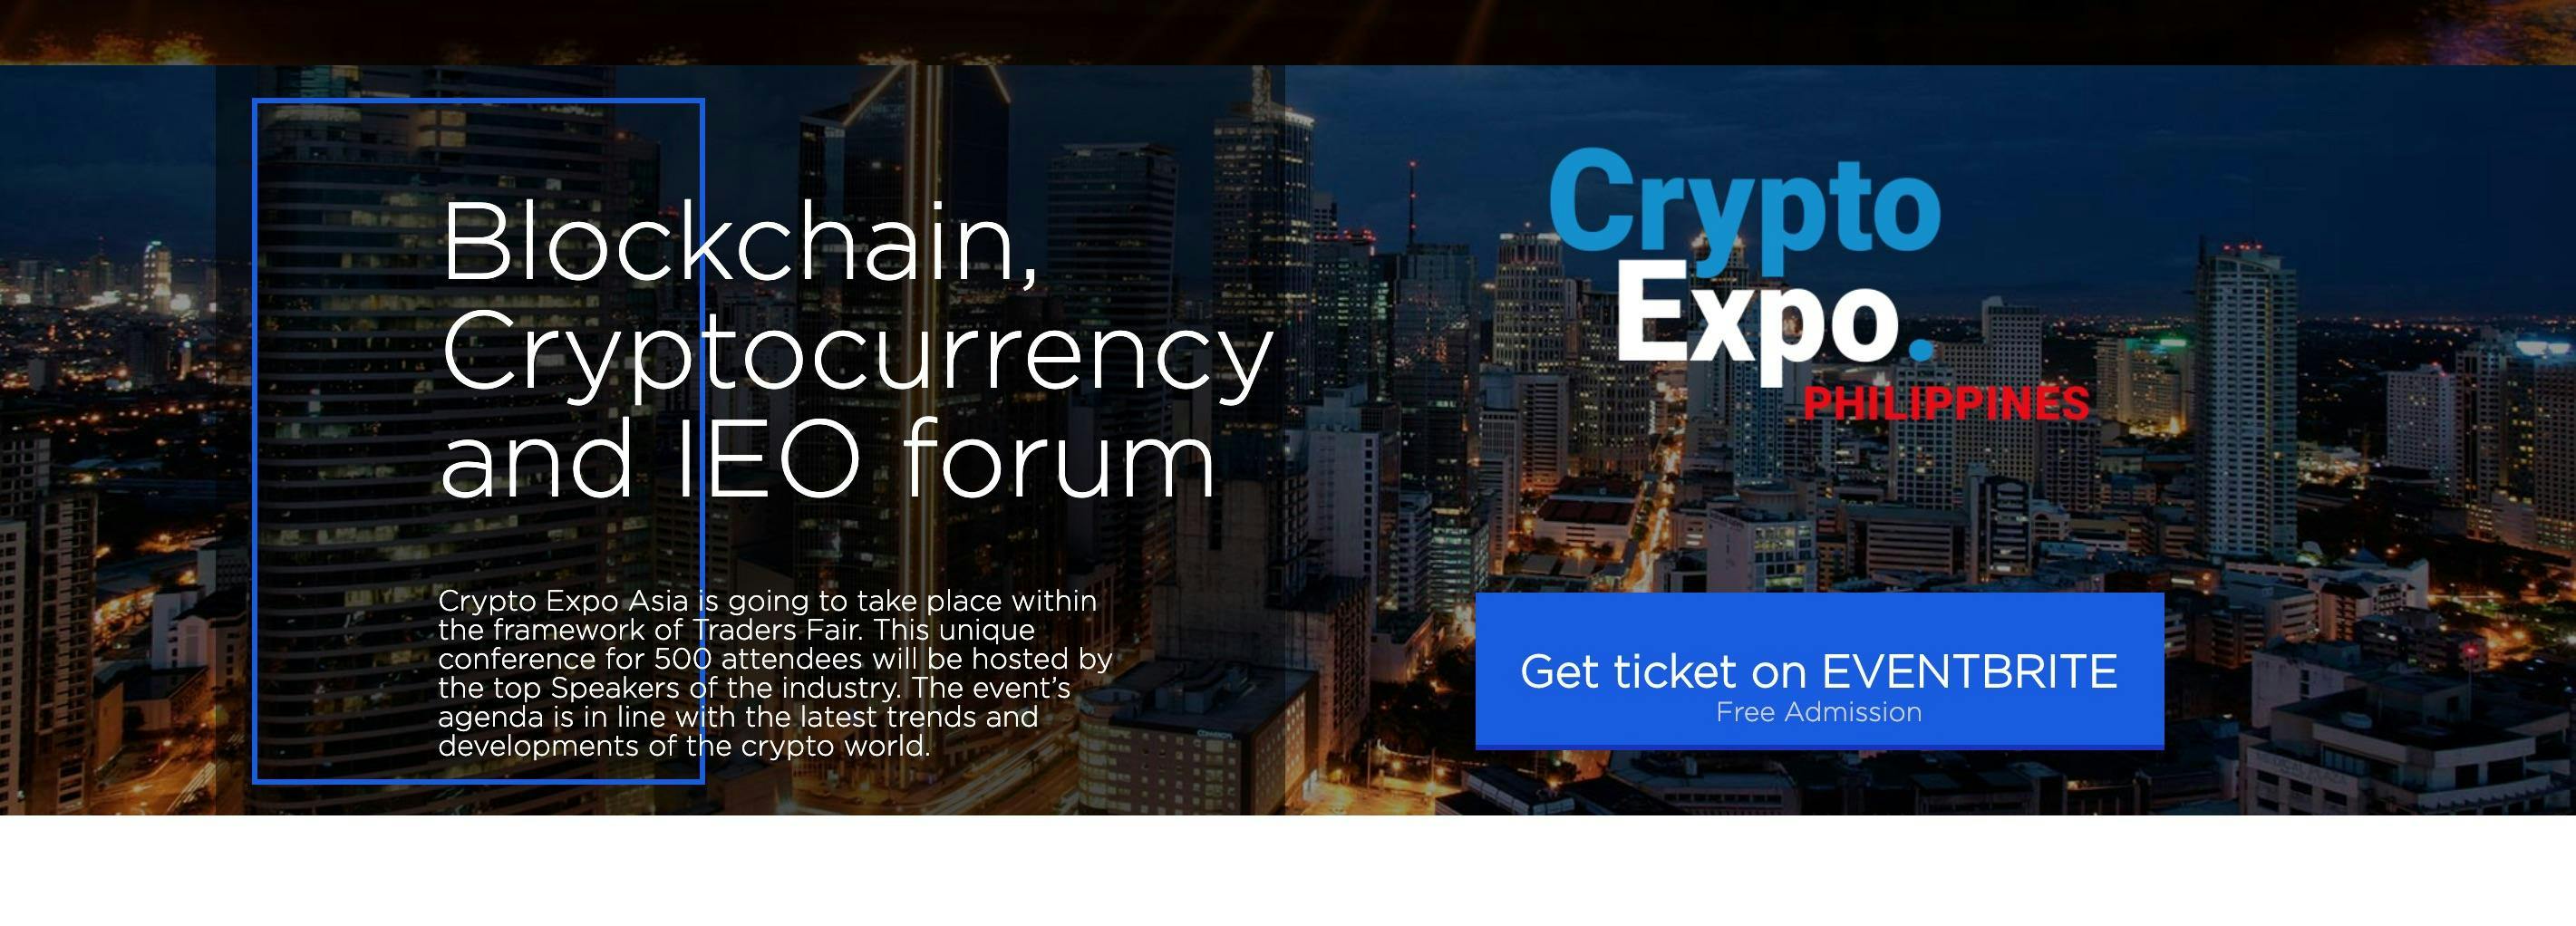 Crypto Expo Forum 2019 - Philippines